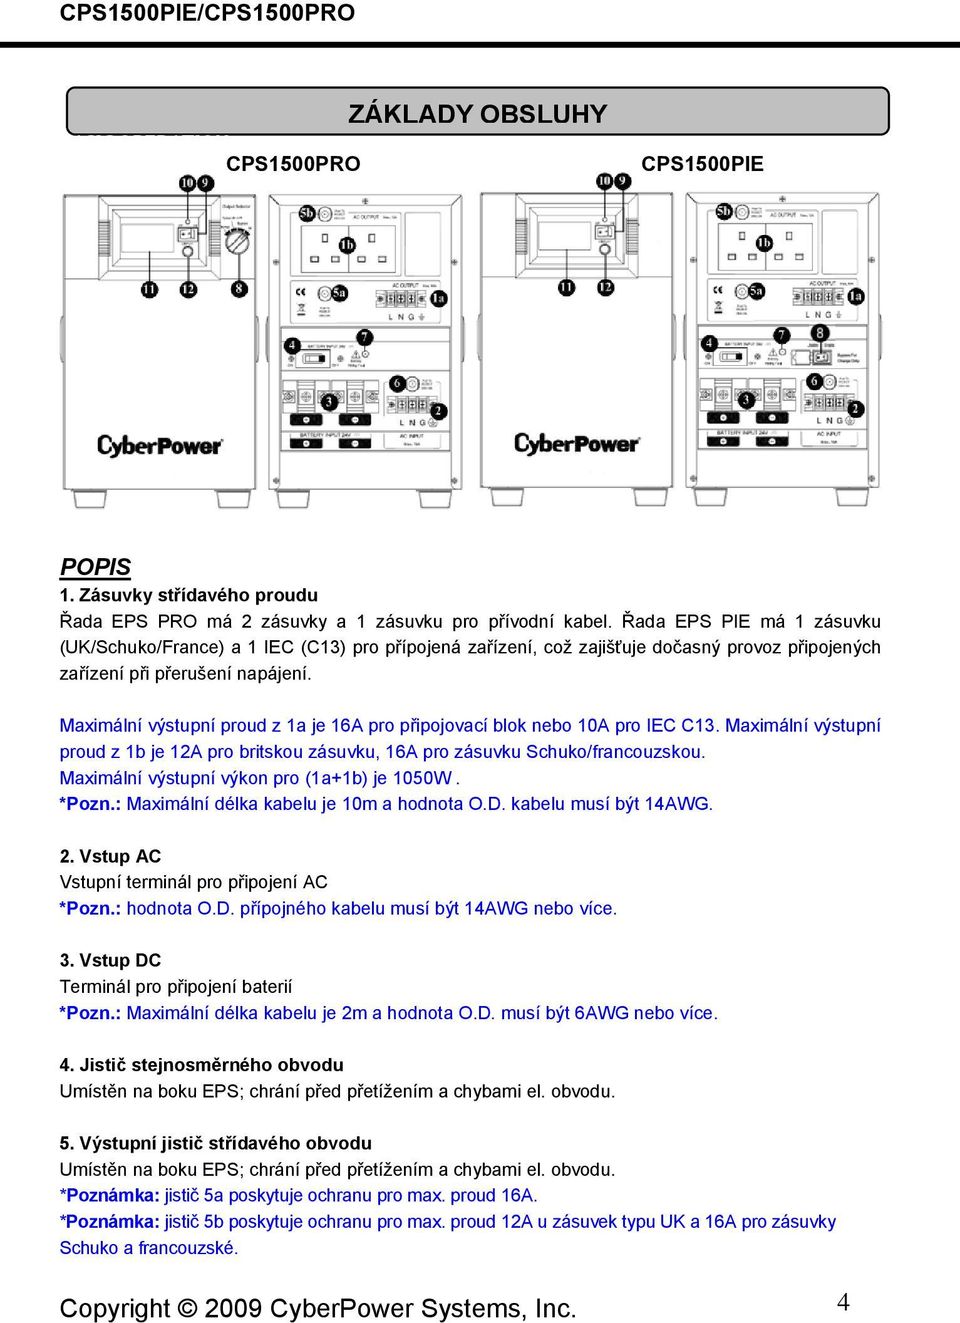 Maximální výstupní proud z 1a je 16A pro připojovací blok nebo 10A pro IEC C13. Maximální výstupní proud z 1b je 12A pro britskou zásuvku, 16A pro zásuvku Schuko/francouzskou.